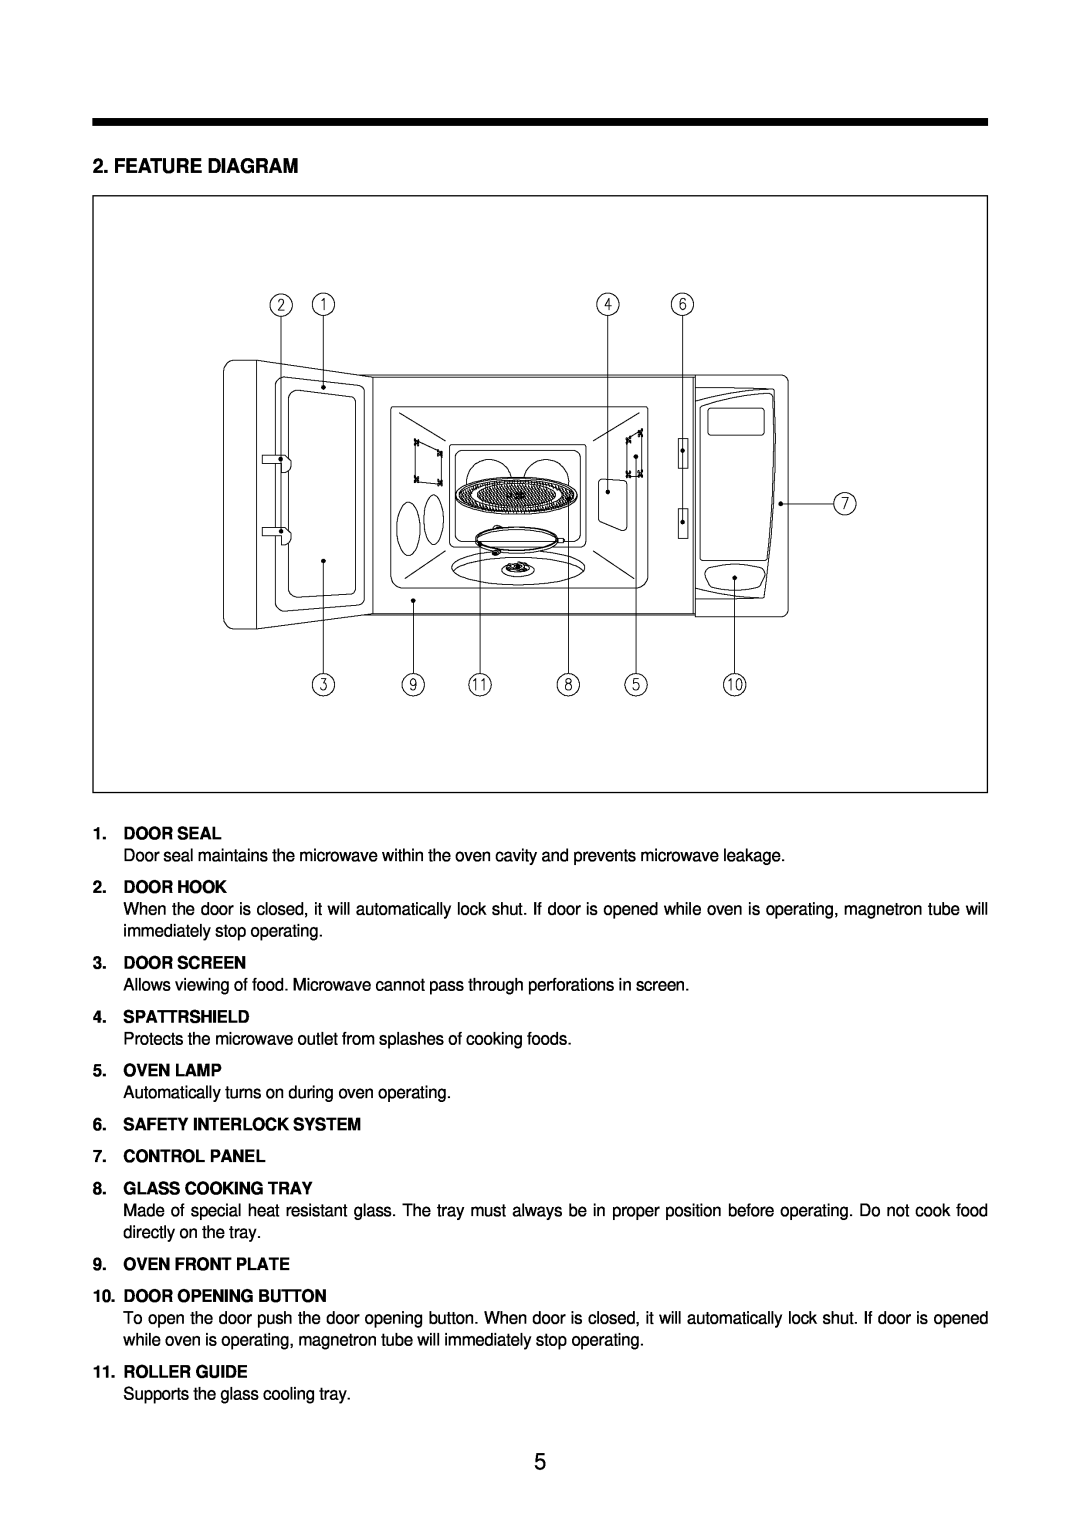 Daewoo KOR-631G0A, KOR-861H0A Feature Diagram, Door Seal, Door Hook, Door Screen, Spattrshield, Oven Lamp, Roller Guide 